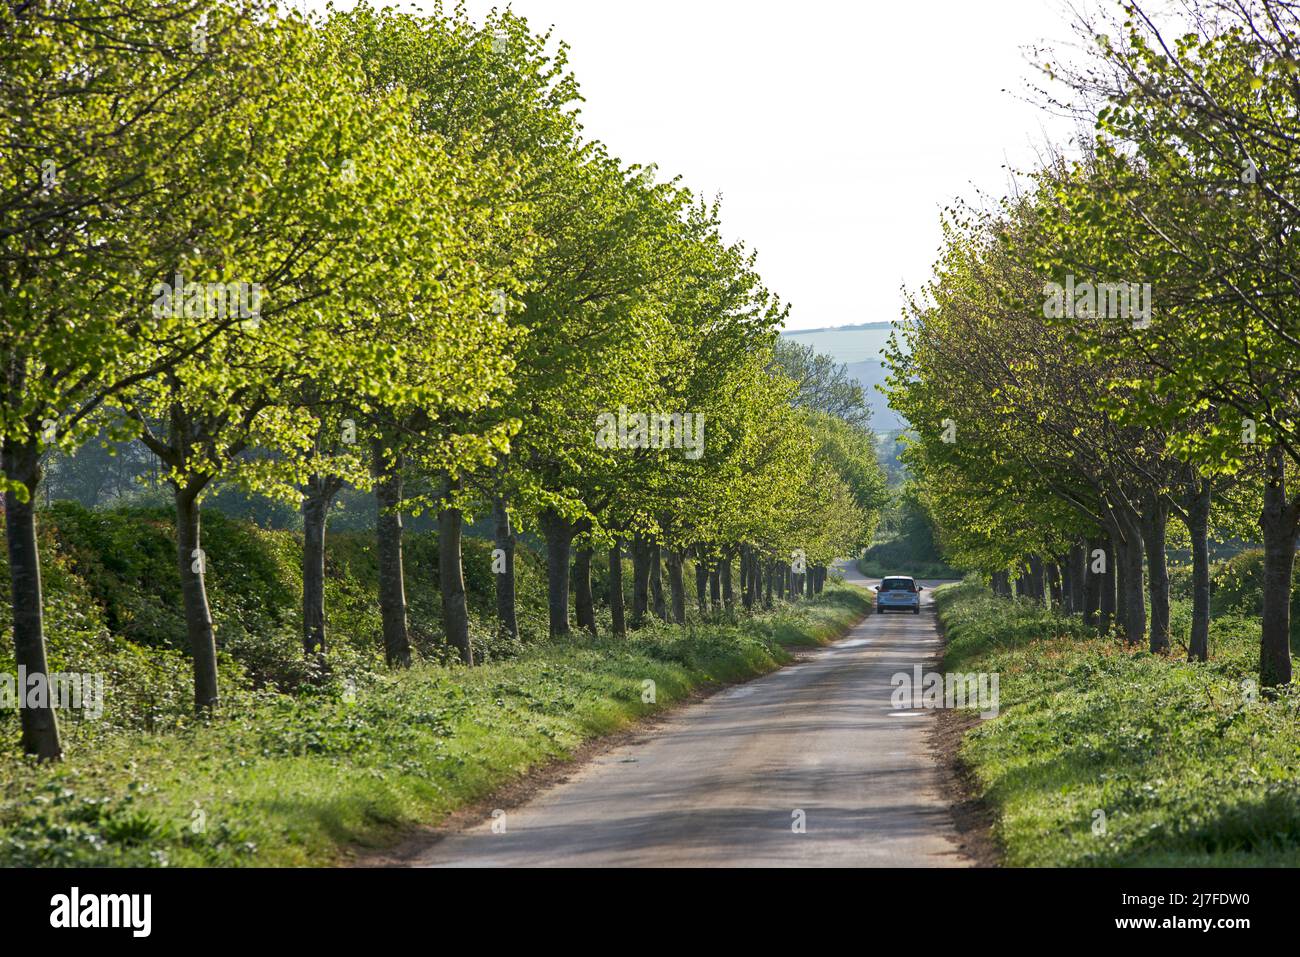 Voiture sur une route étroite bordée d'arbres près de Hotham, East Yorkshire, Angleterre Royaume-Uni Banque D'Images